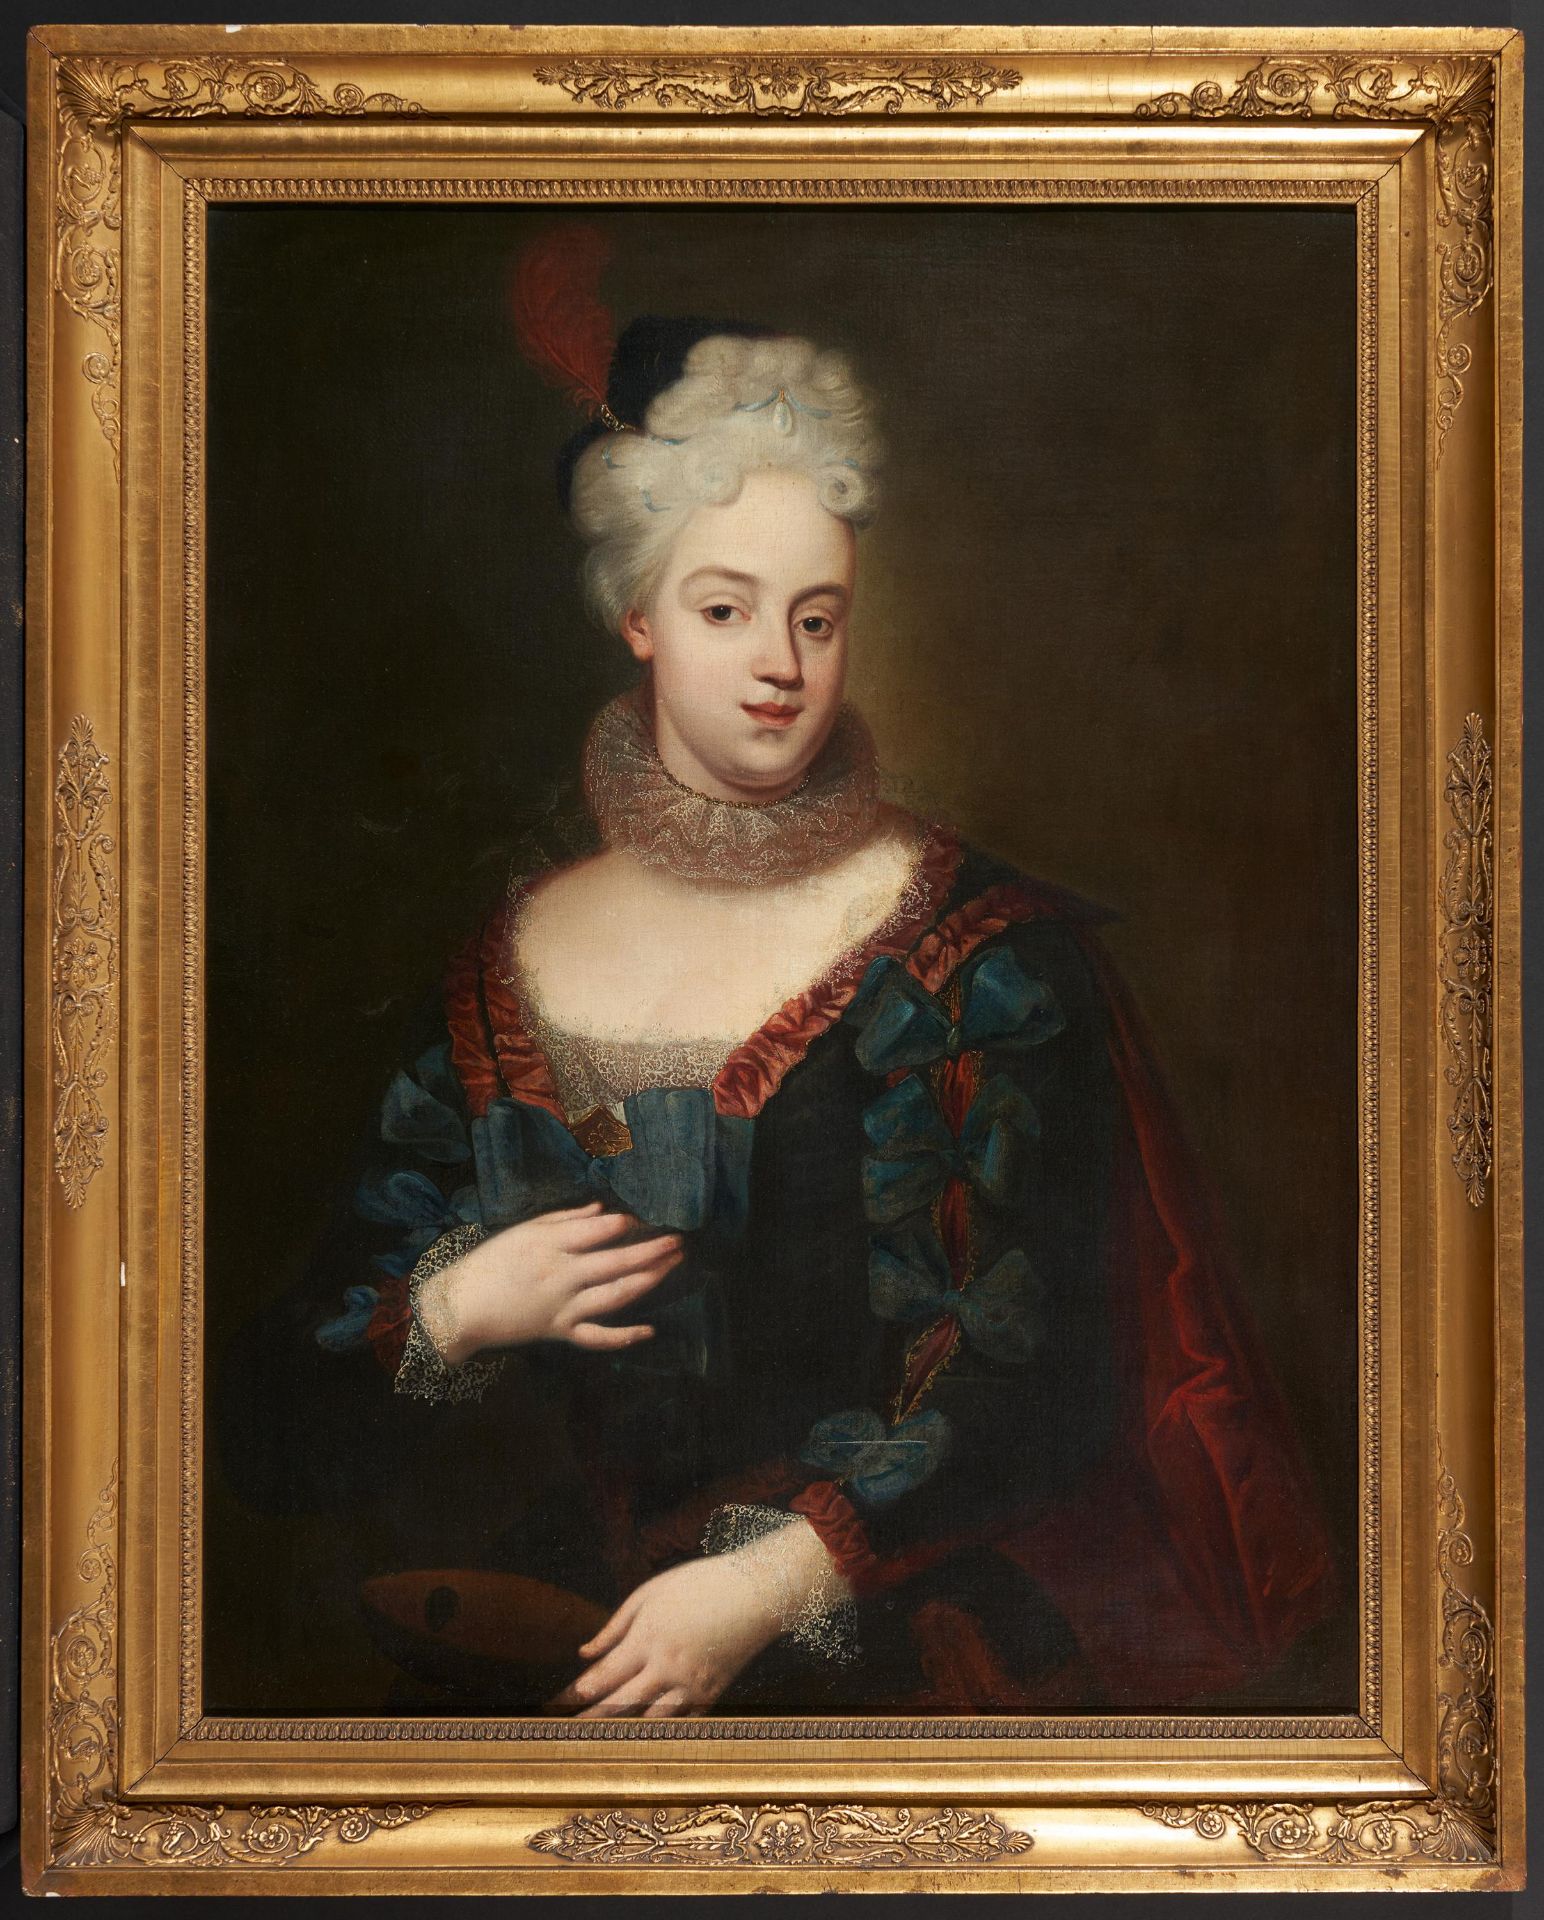 Französischer Meister. 18. Jh. Portrait einer vornehmen Dame mit Feder im Haar. Öl auf Leinwand. - Bild 2 aus 3